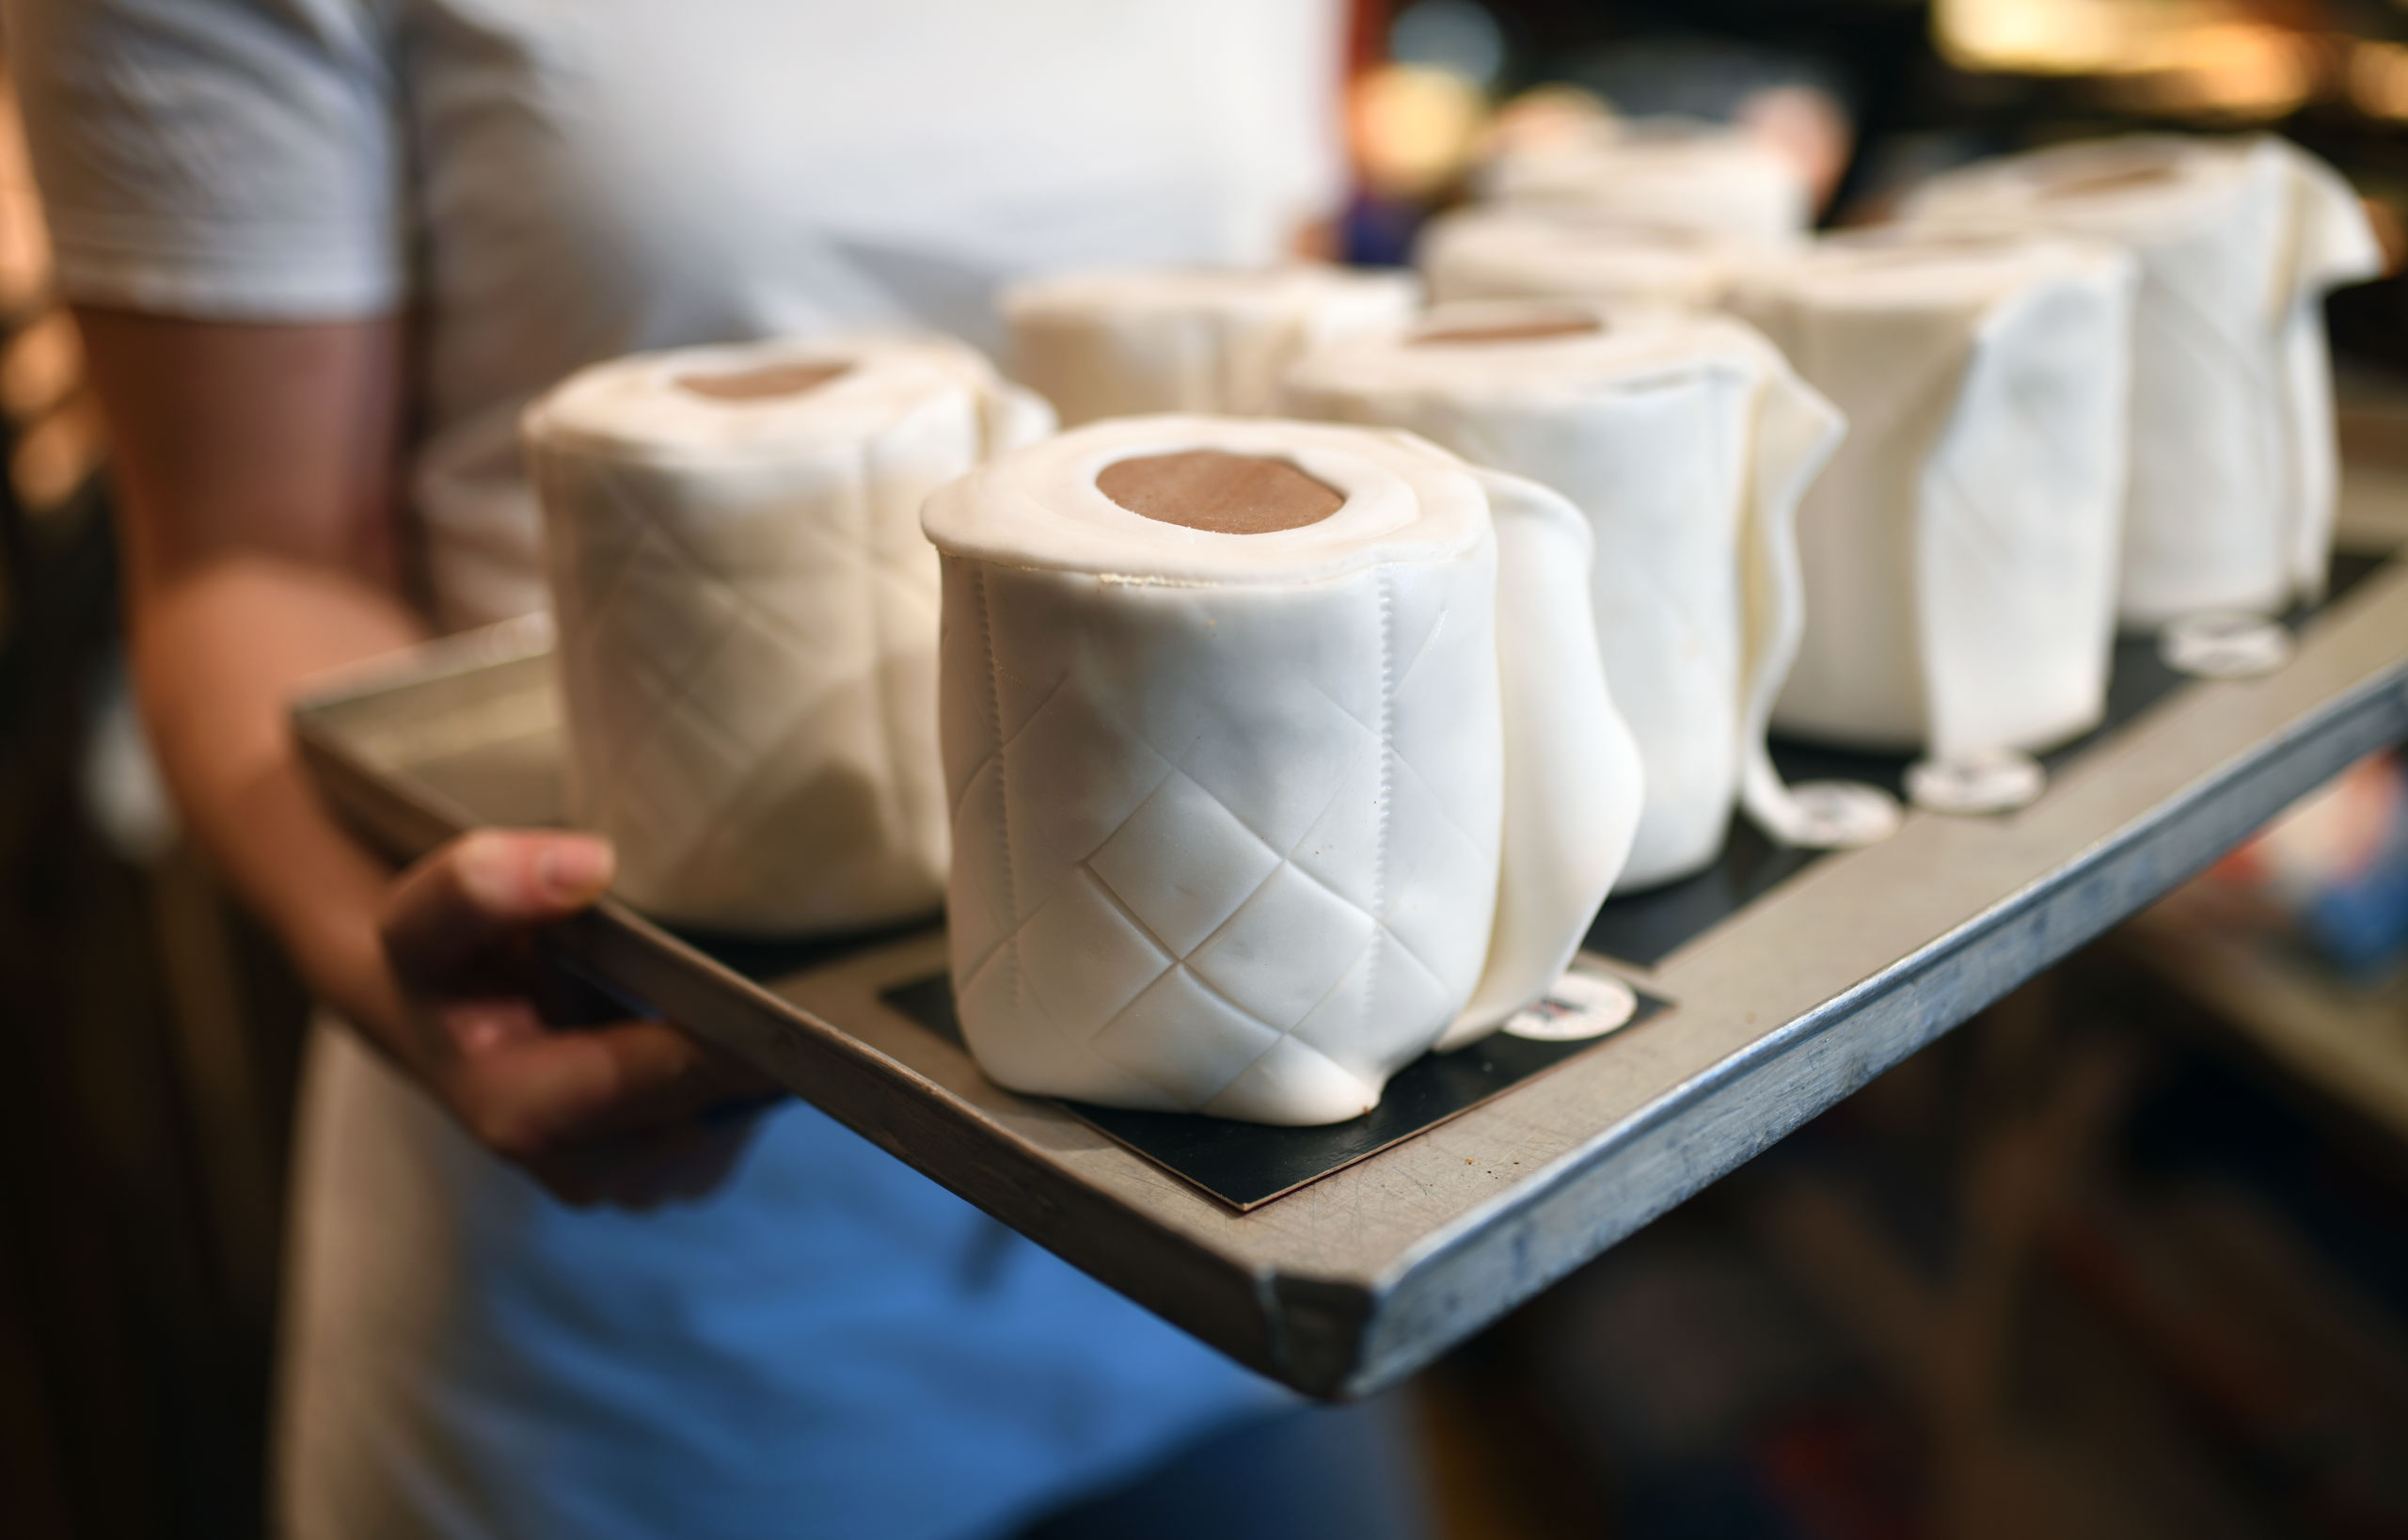 Een optimistisch plaatje uit een Duitse bakkerij in Dortmund, waar cakes in de vorm van rollen toiletpapier de oven in gaan. Het zijn inmiddels bestsellers van de bakkerij.